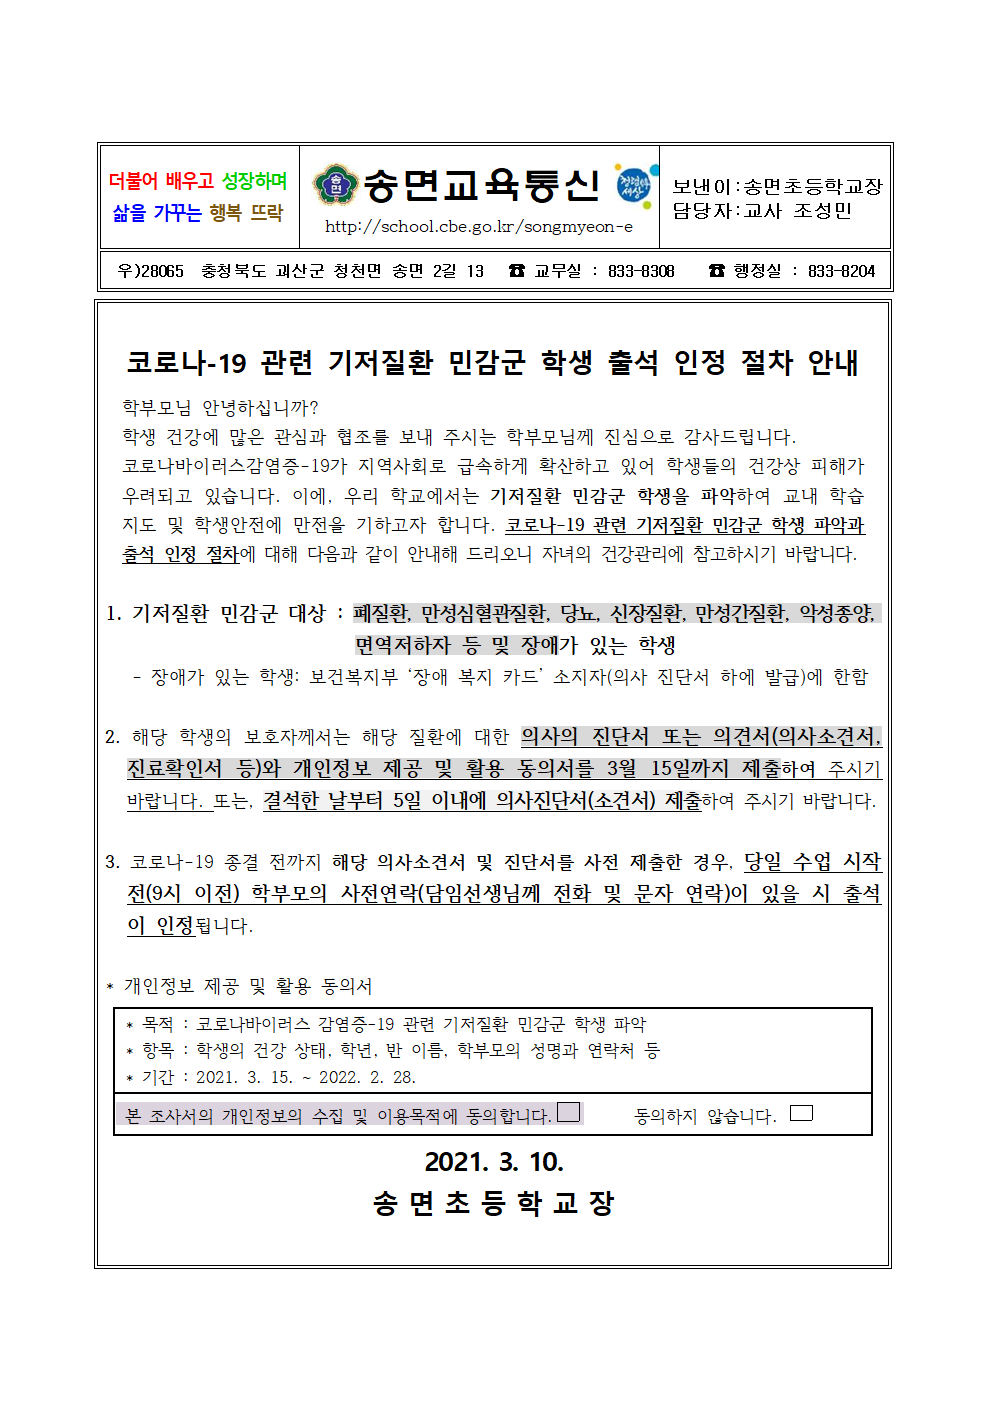 코로나-19 관련 기저질환 민감군 학생 출석 인정 절차 안내 가정통신문(1)001